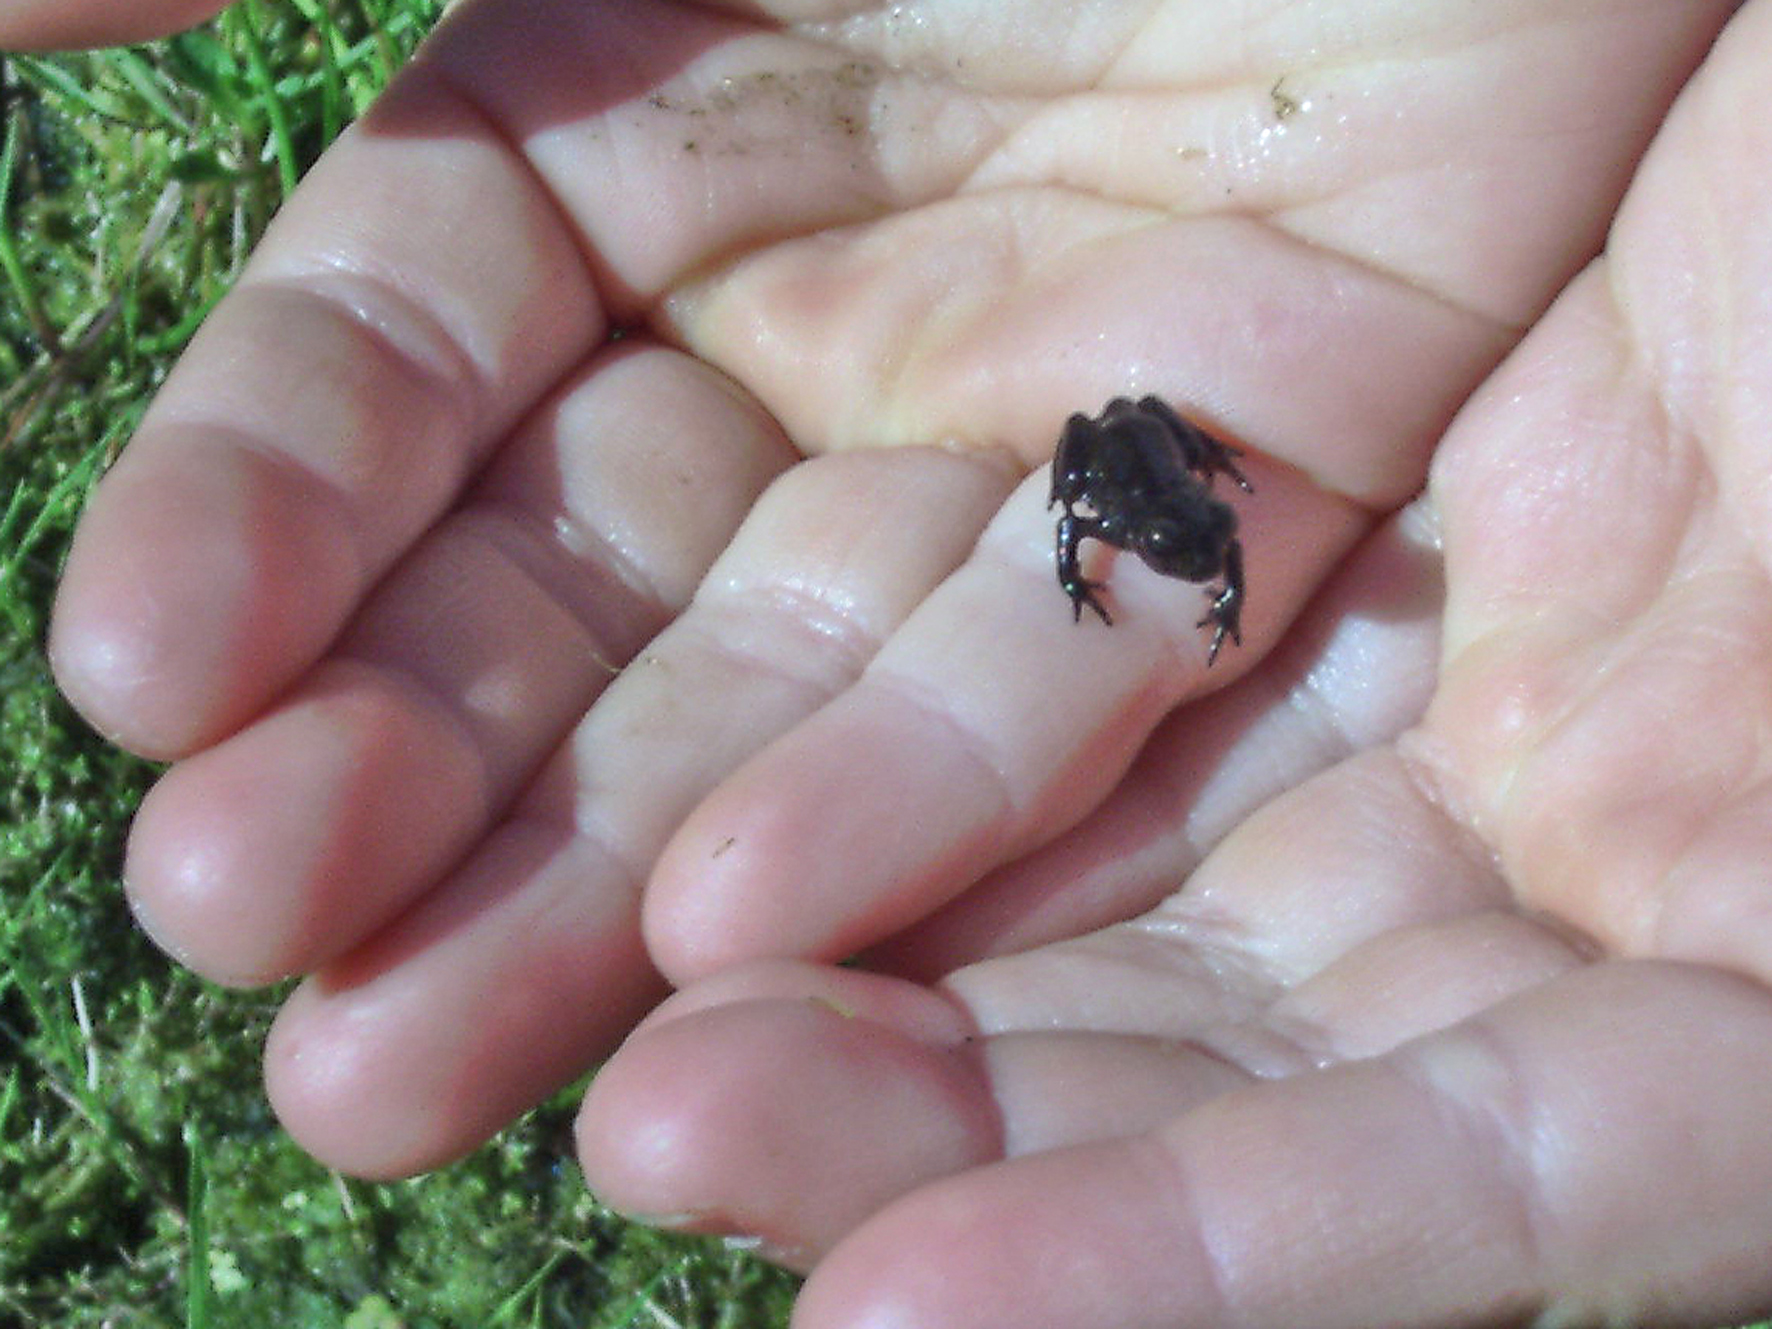 sie diesen kleinen Frosch “süß” und nicht eklig finden